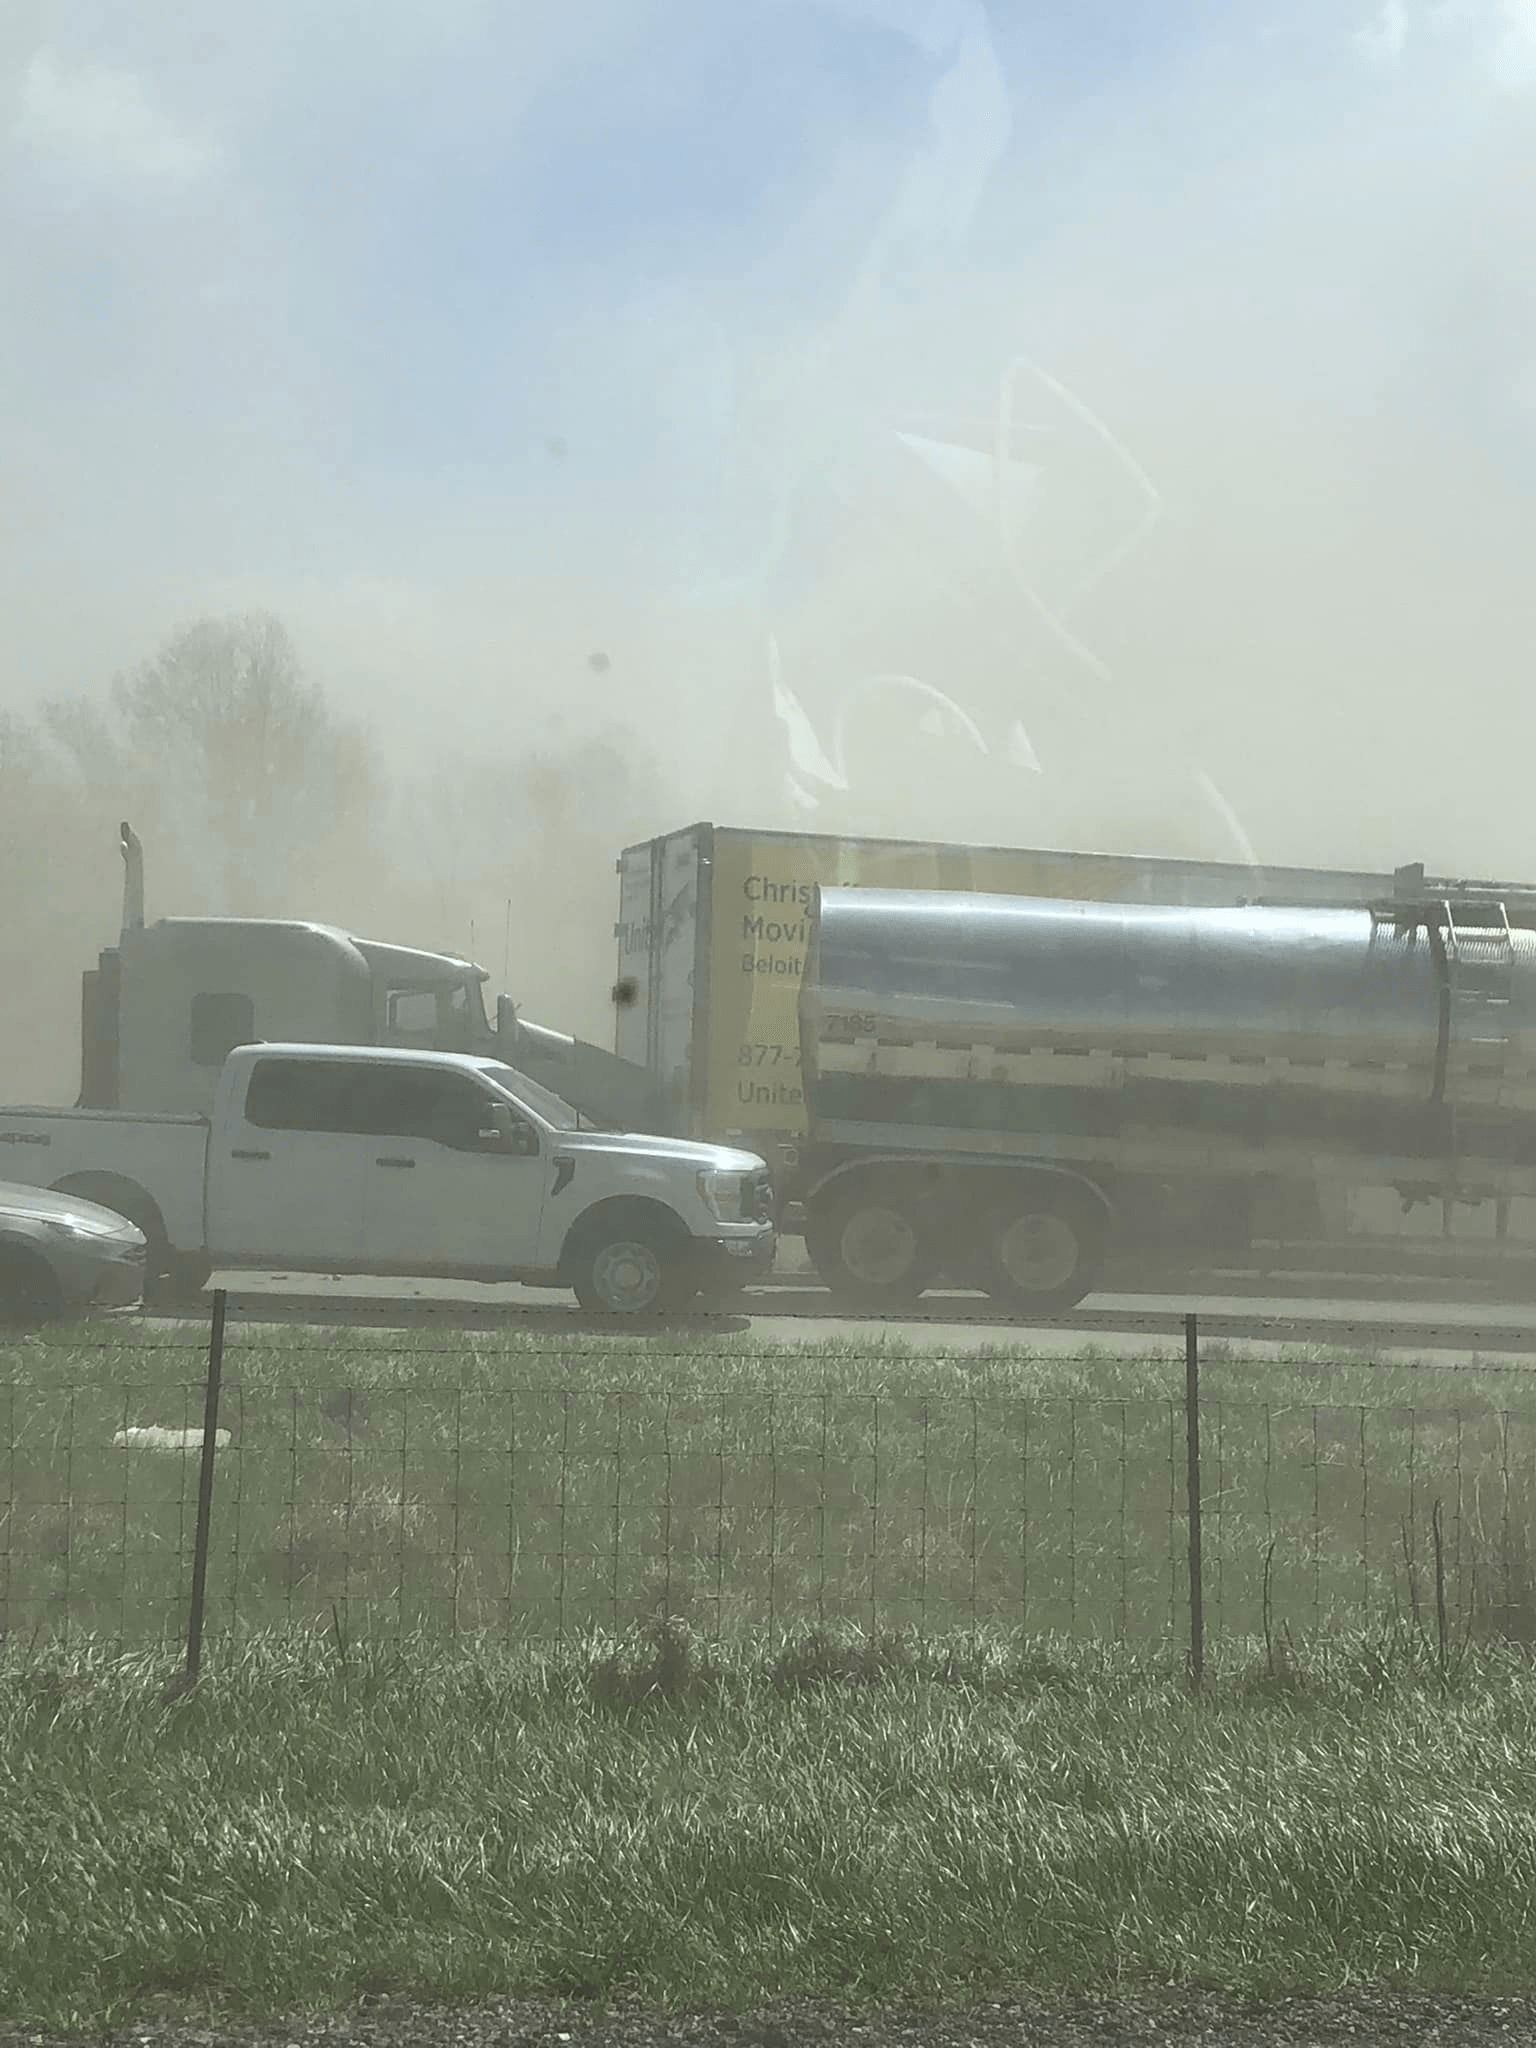 Imágenes muestran accidente masivo en la I-55 en medio de una tormenta de polvo en el centro sur de Illinois